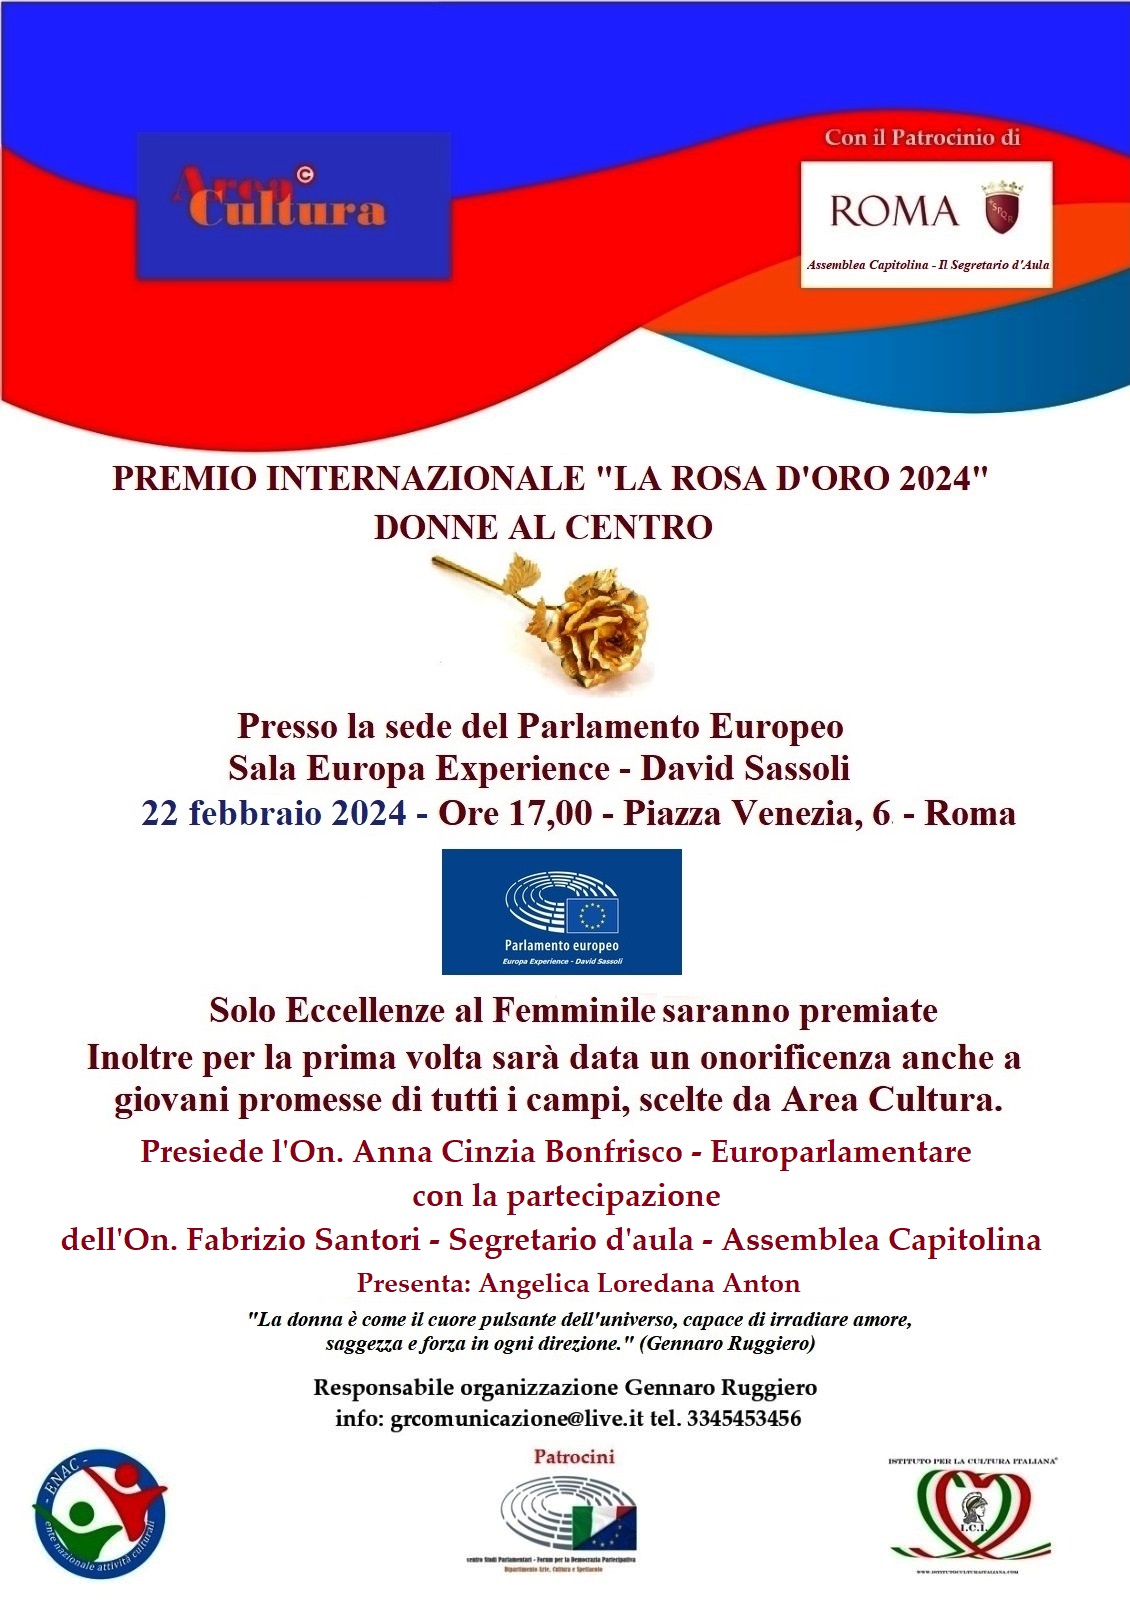 Eccellenze Femminili il 22 febbraio riceveranno da Area Cultura “La Rosa d’Oro” al Parlamento Europeo – Sala David Sassoli a Roma.